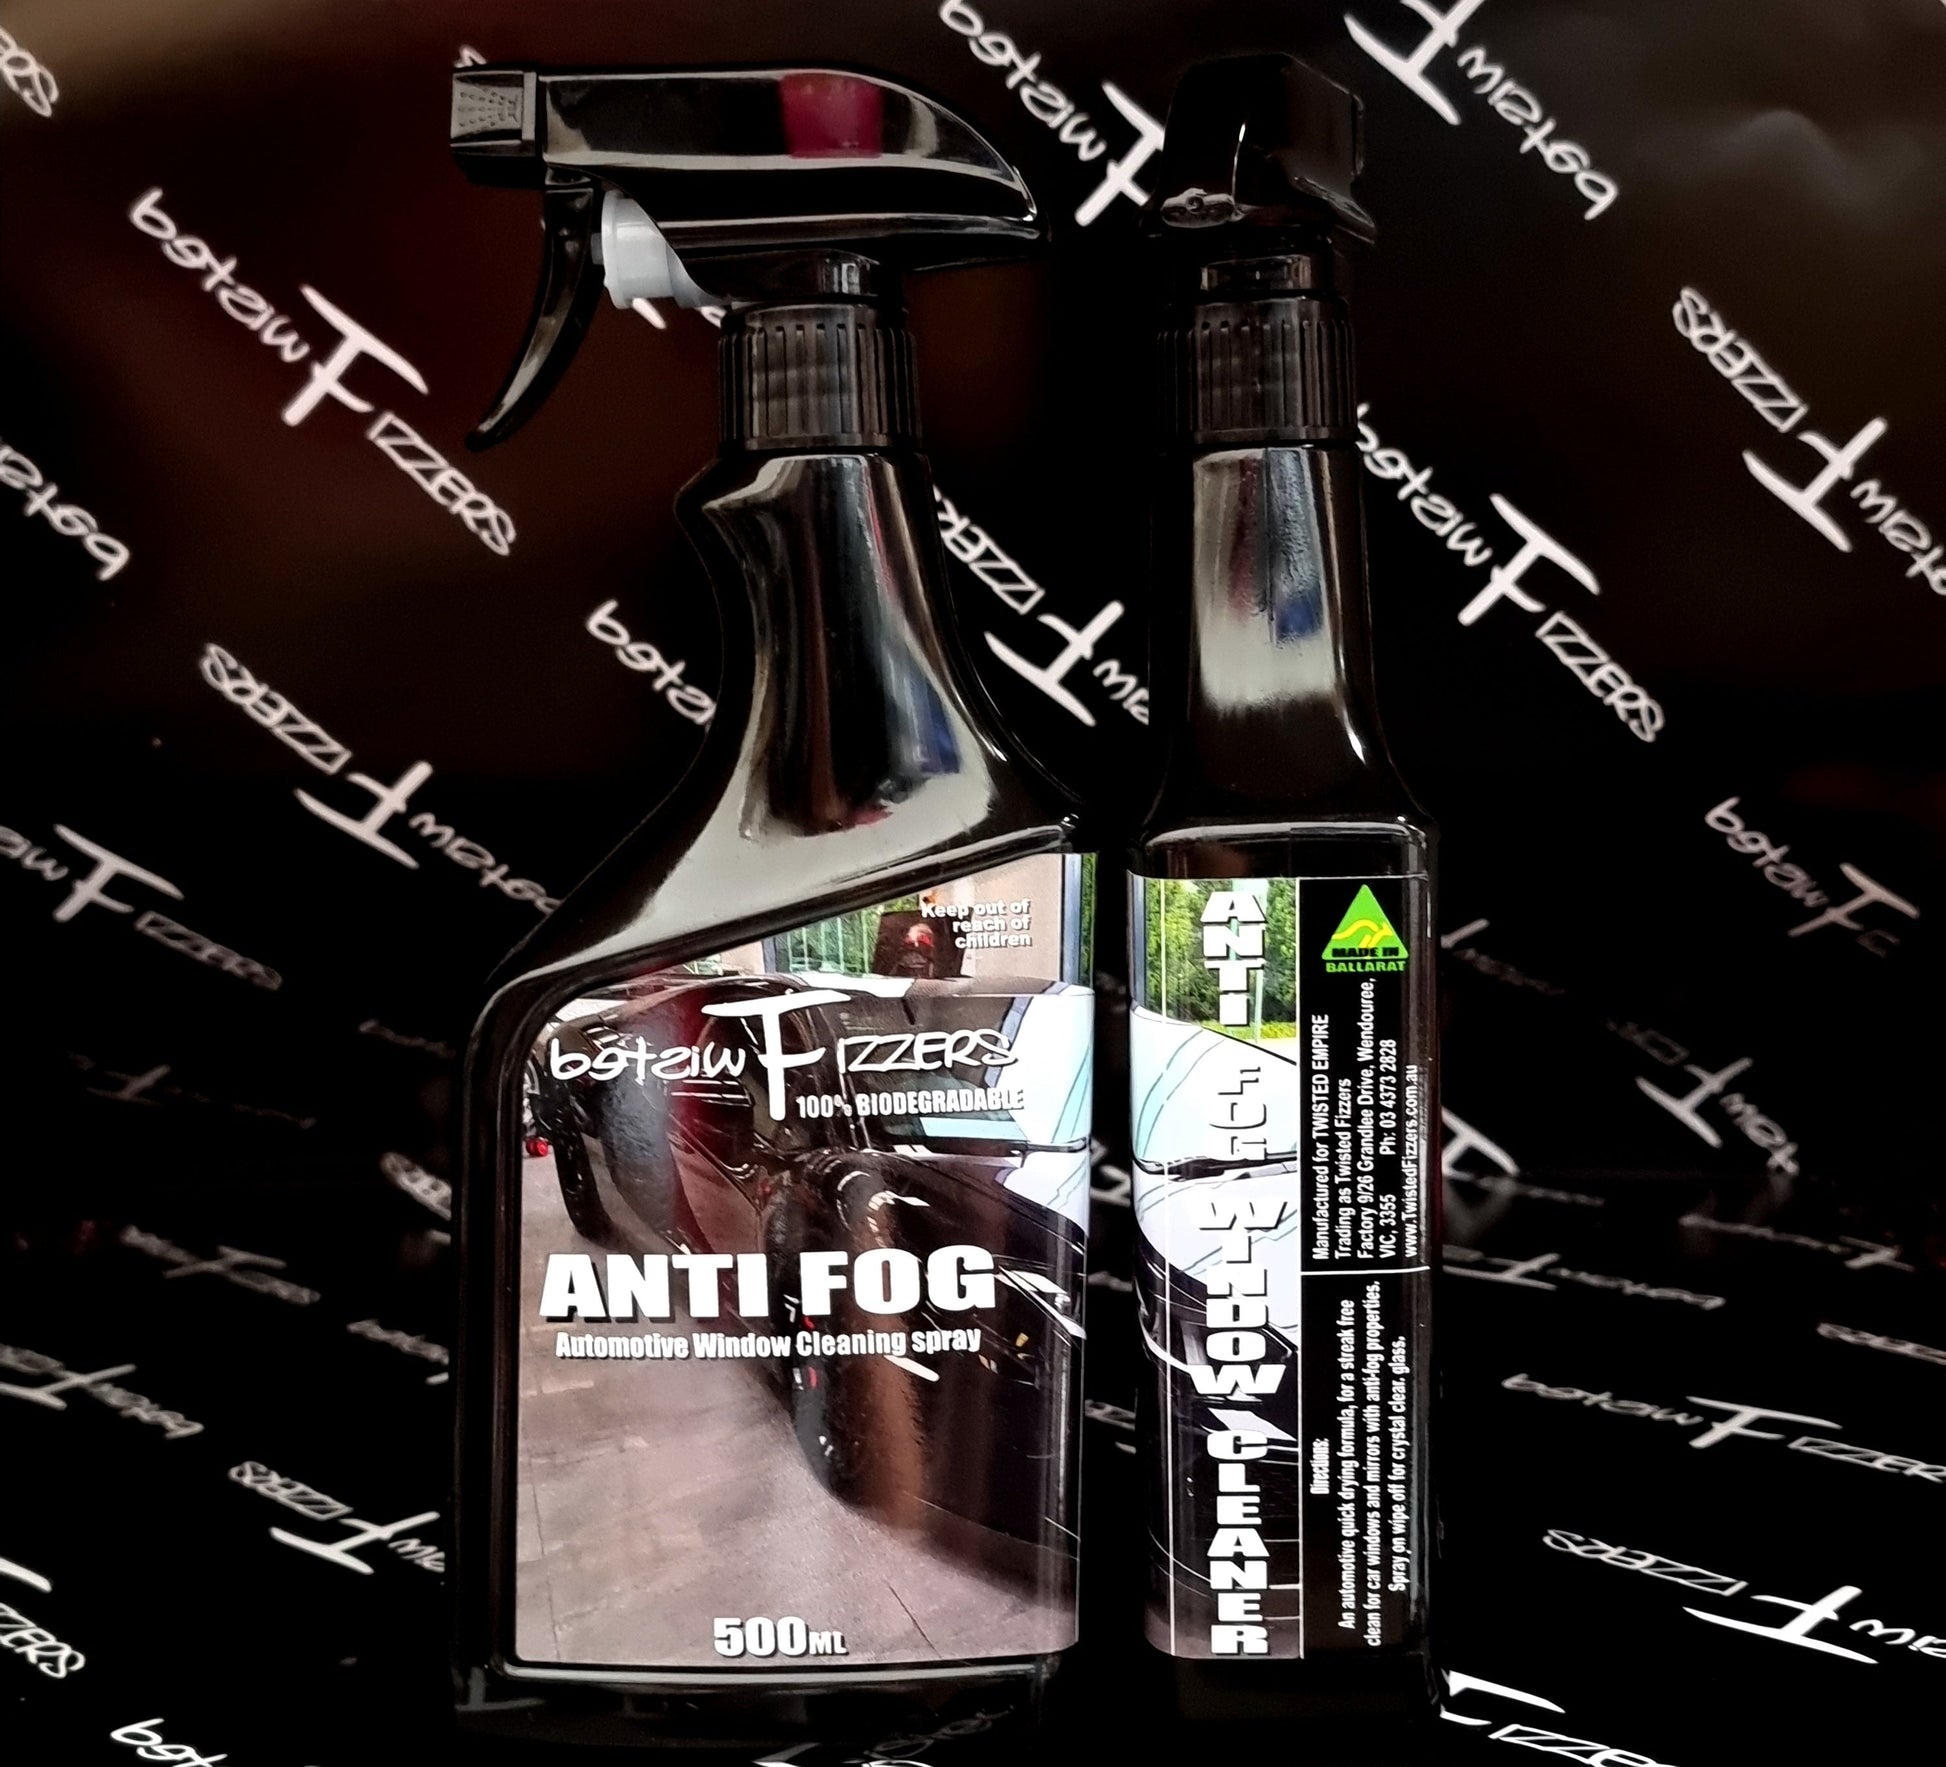 AntiFog Window Cleaner - 500ml spray bottle